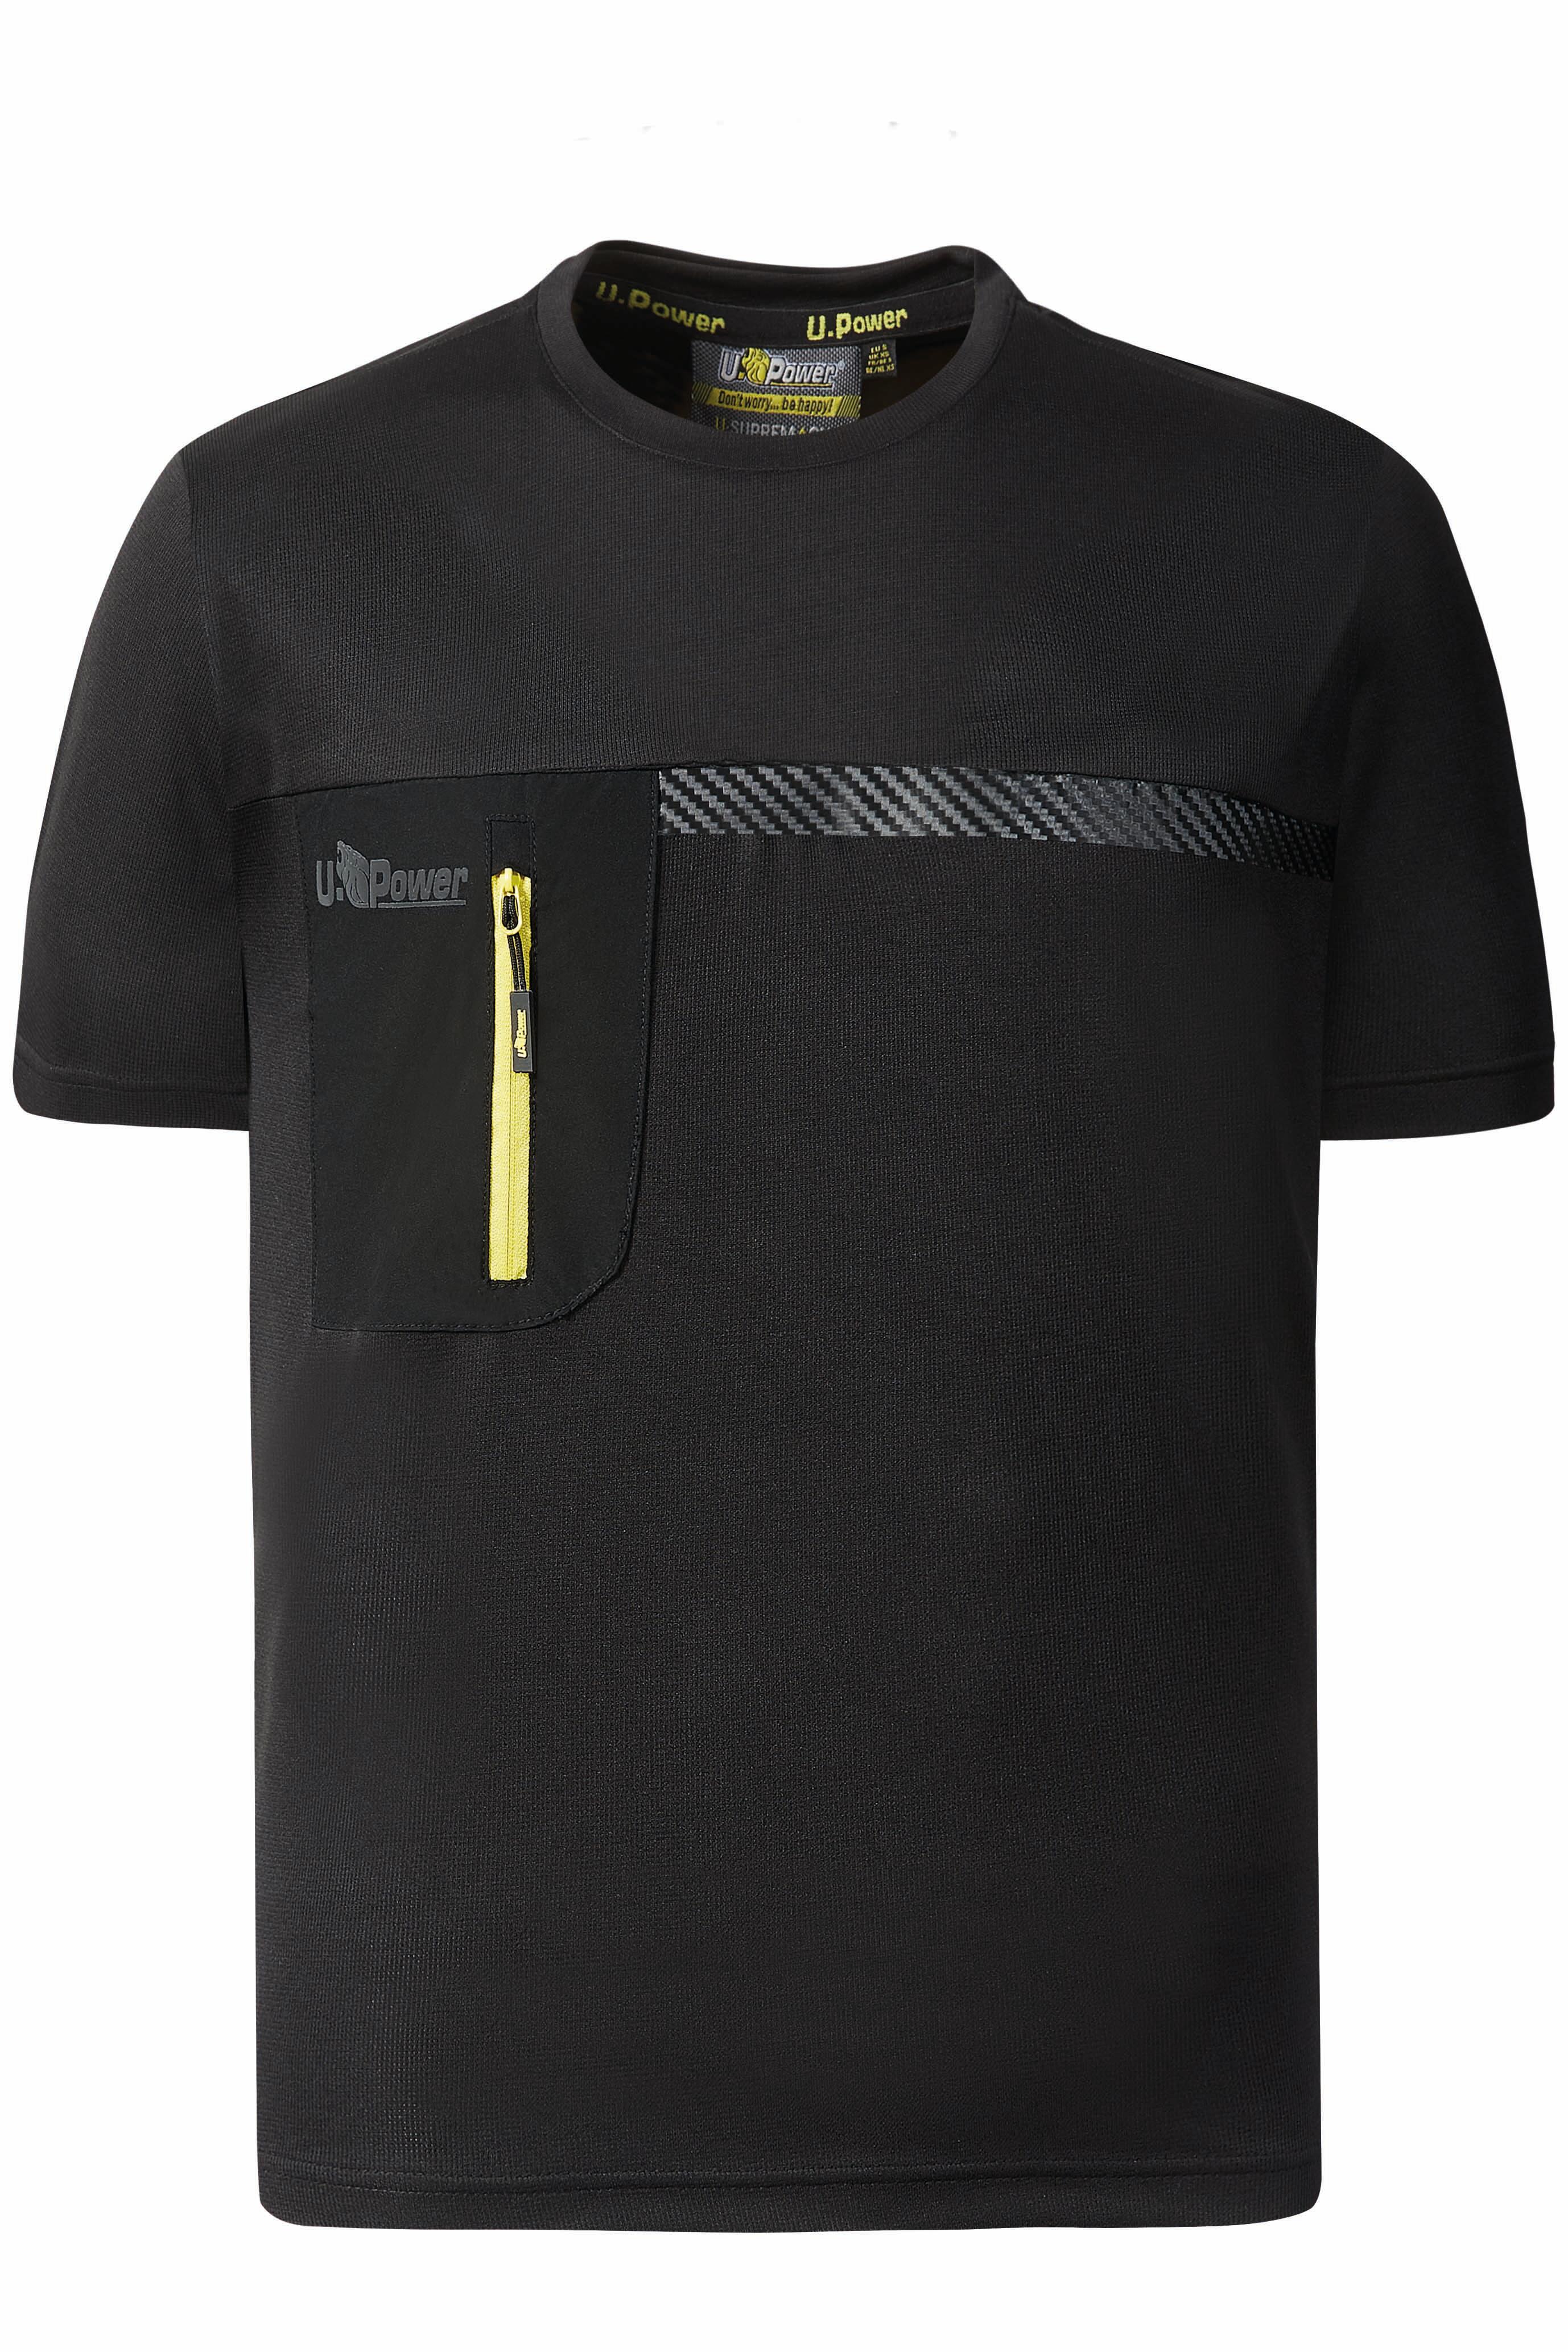 Camiseta u-powerchristal negro, amarillo t